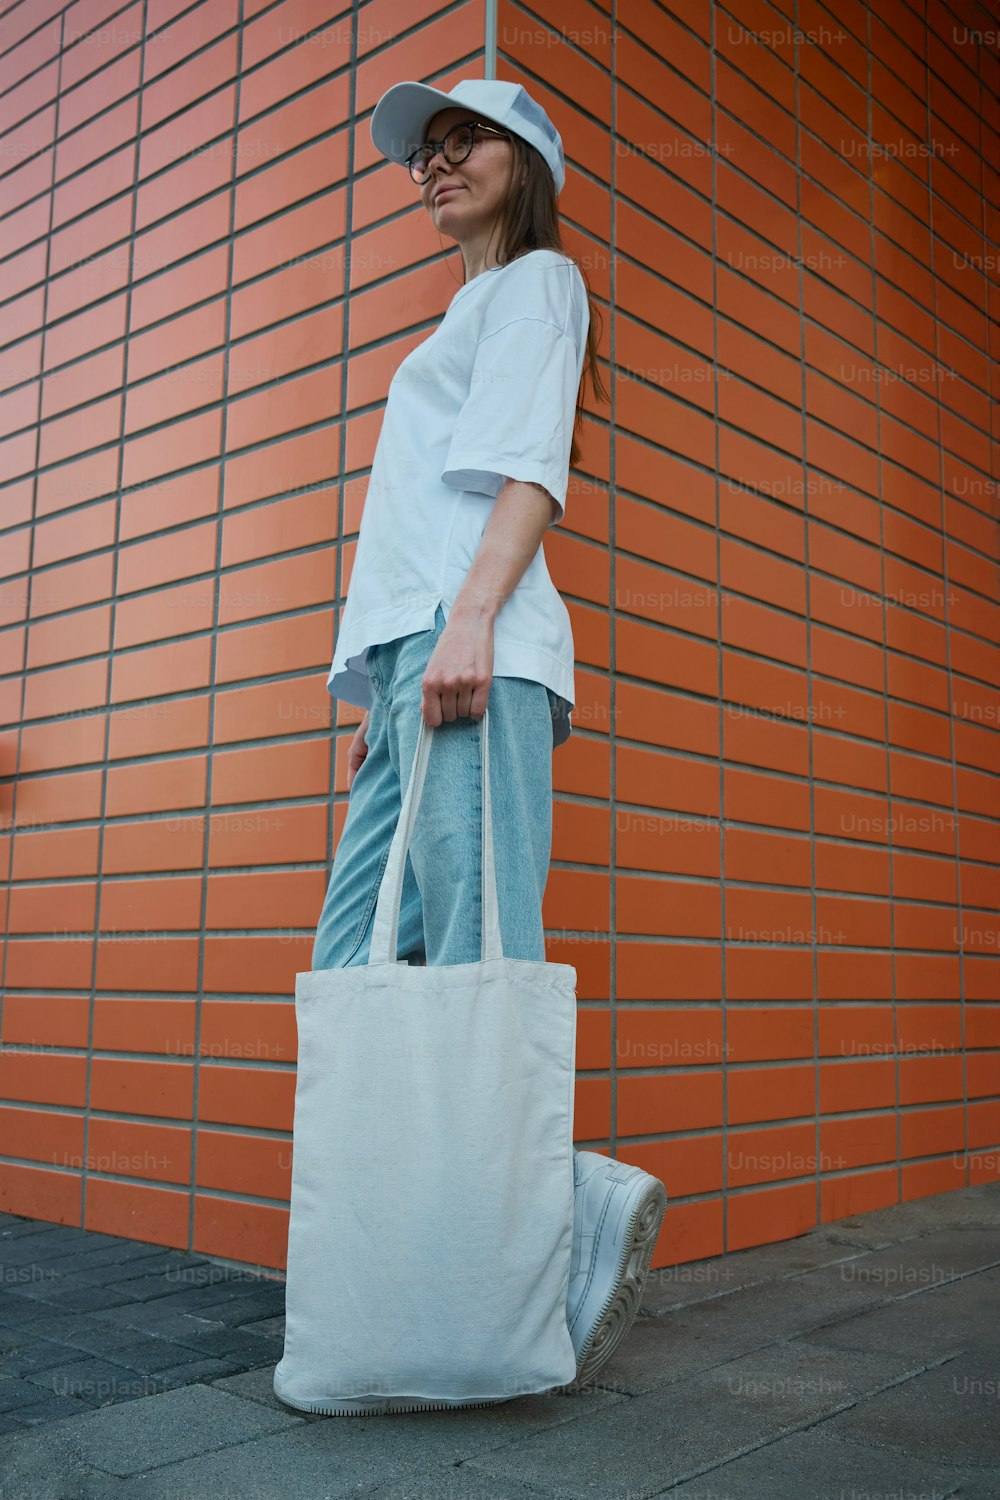 Una mujer sosteniendo una bolsa blanca parada frente a una pared de ladrillos